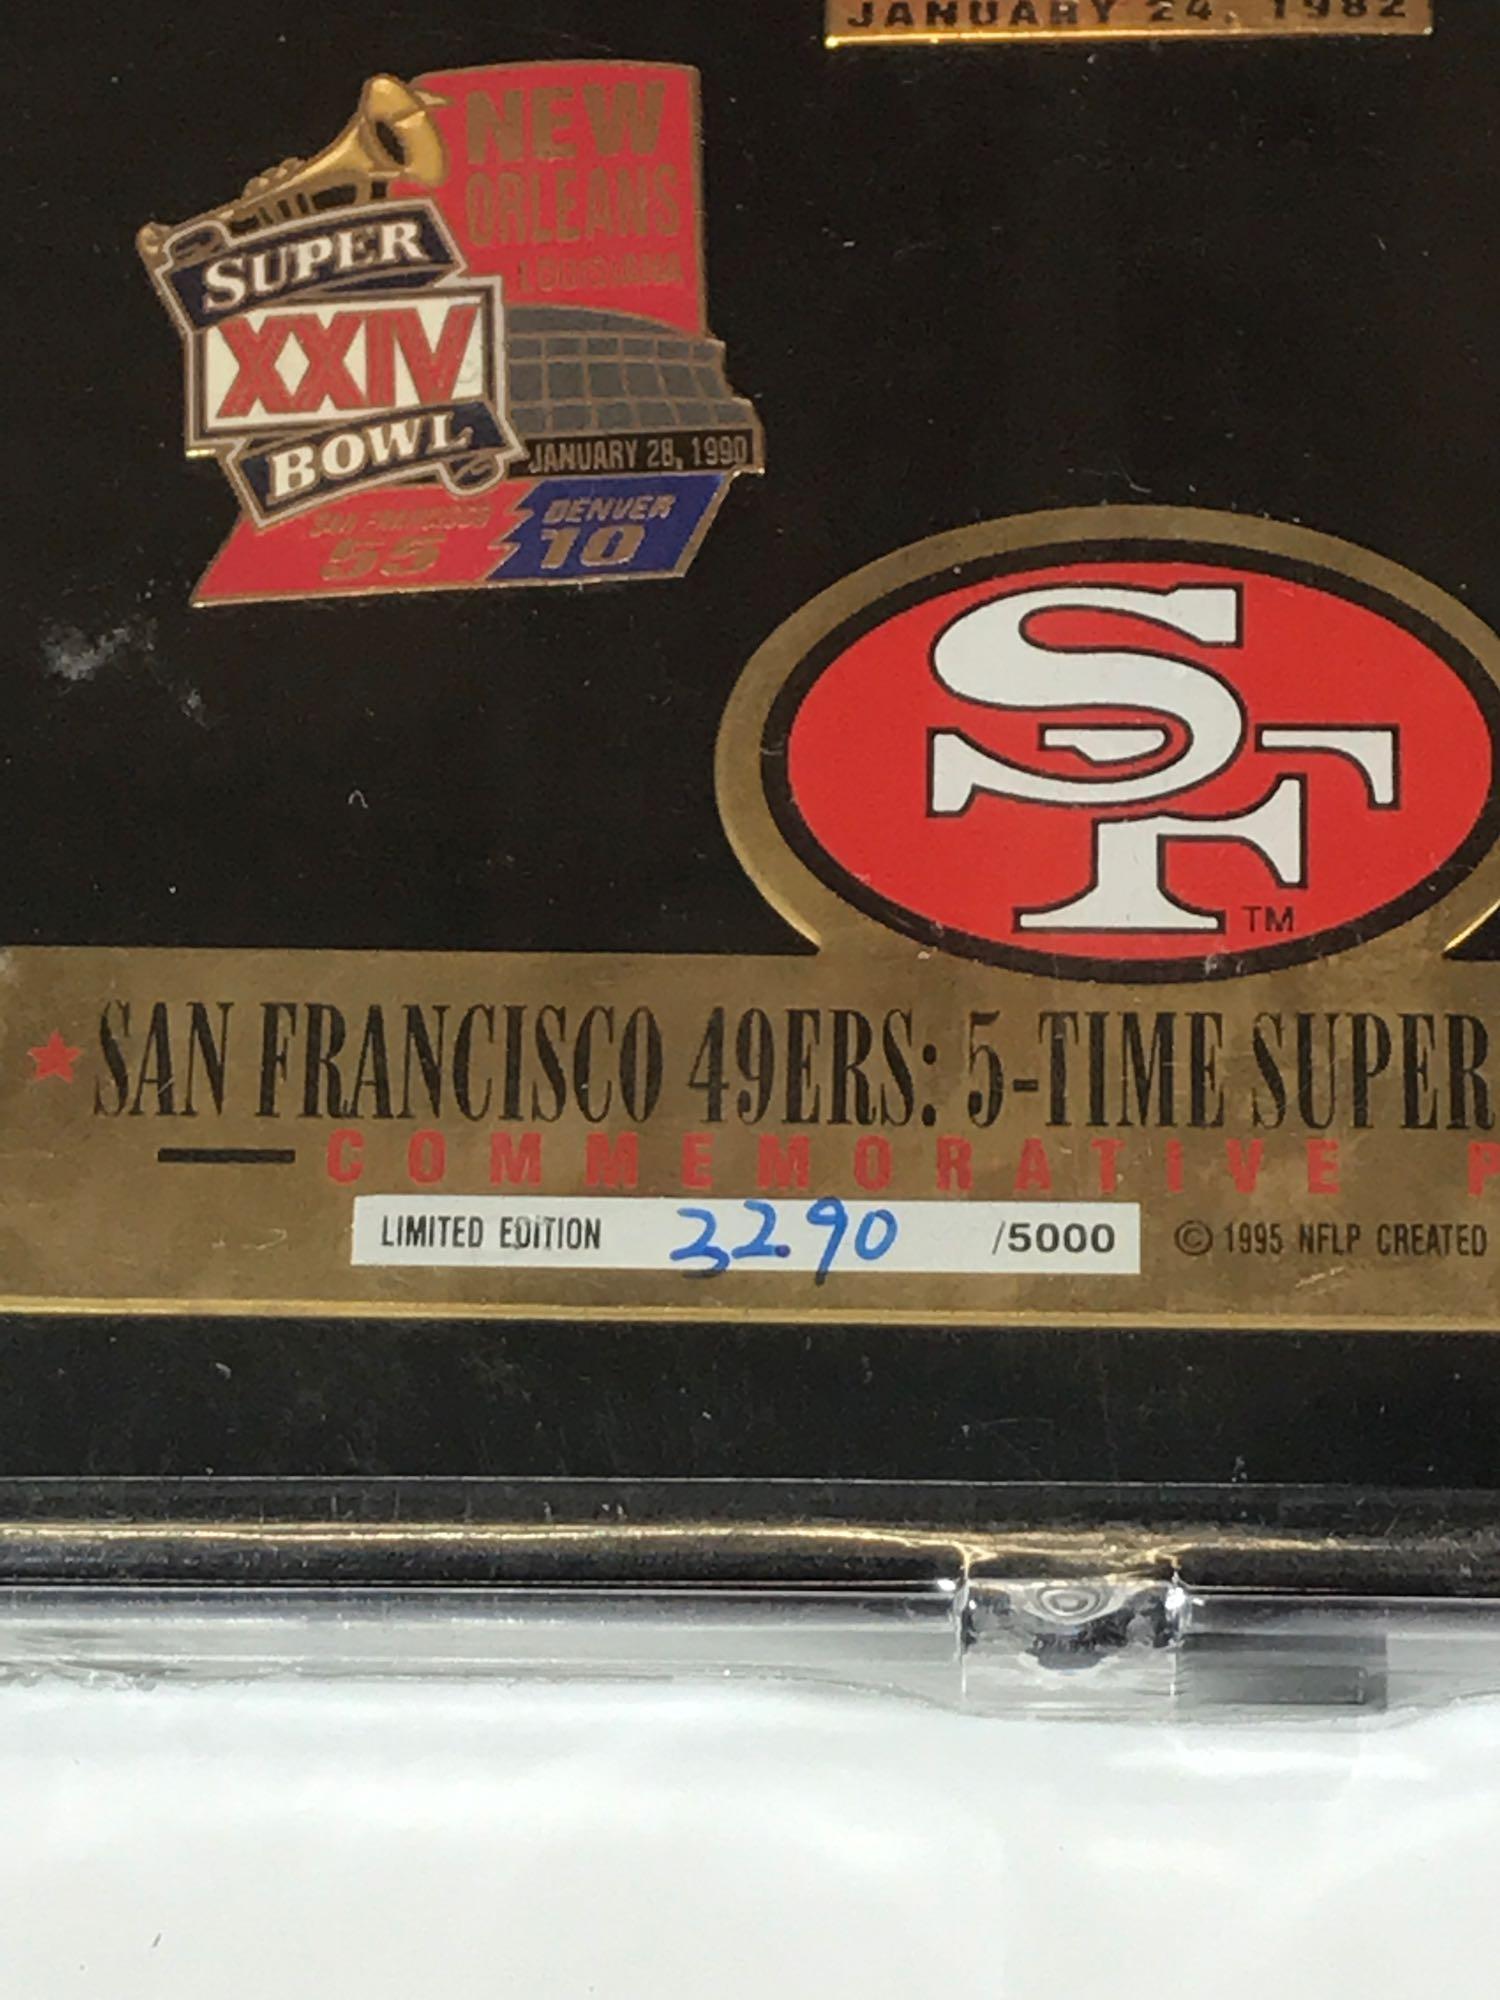 Pin Sets says San Francisco 49ers